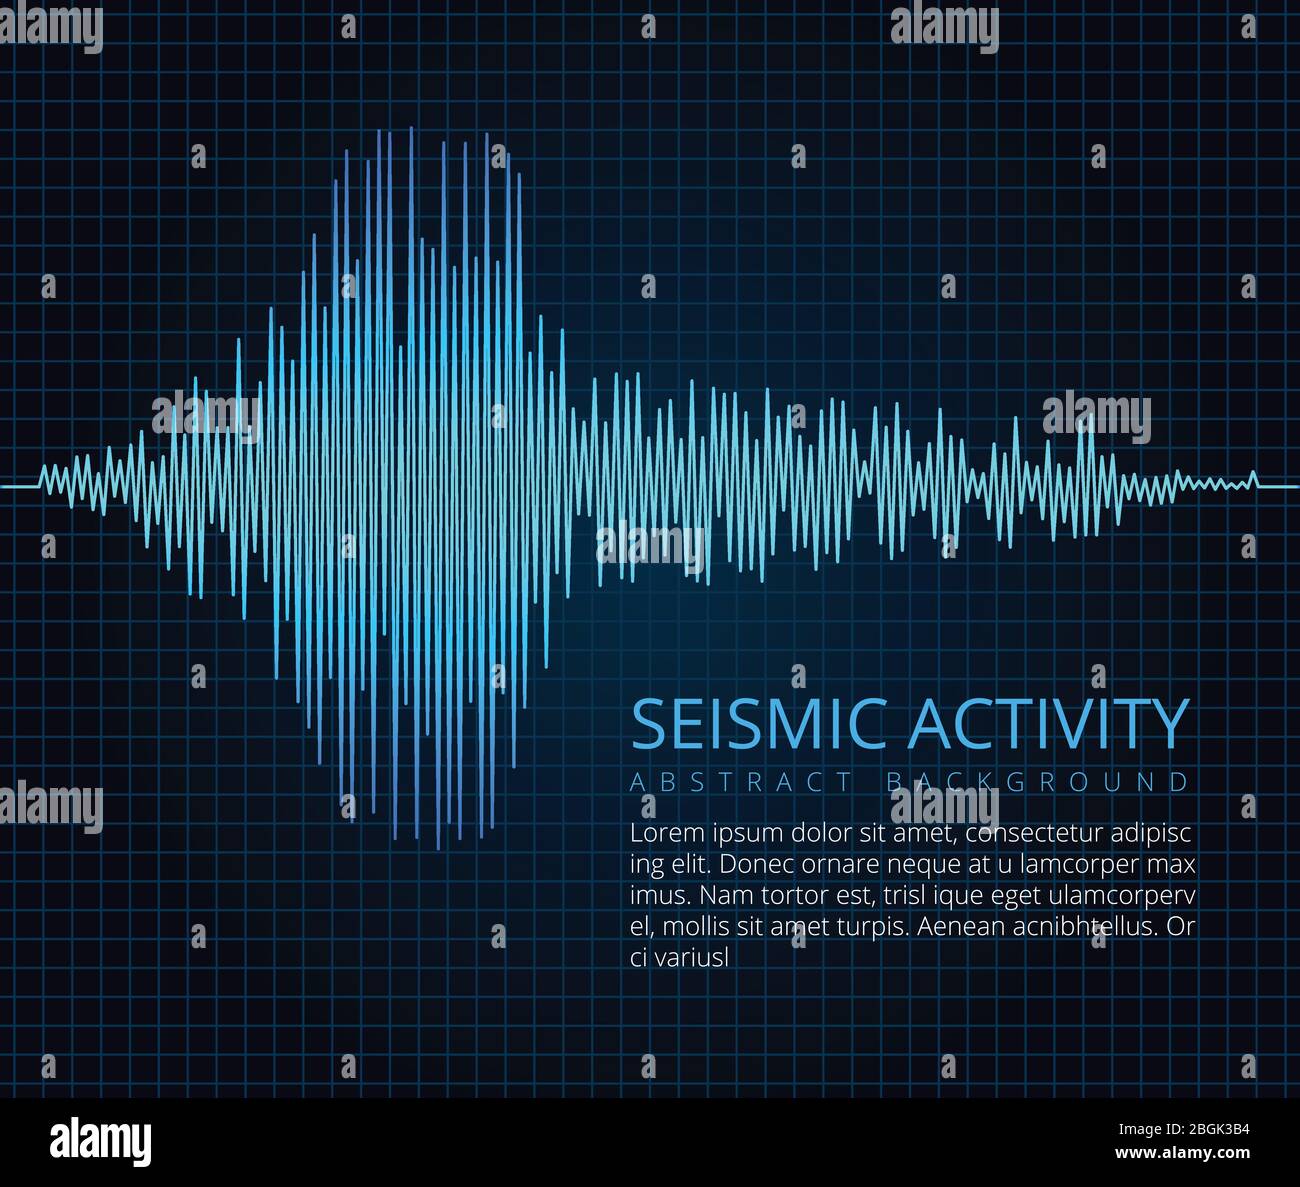 Wellendiagramm der Erdbebenfrequenz, seismische Aktivität. Vektor abstrakt wissenschaftlicher Hintergrund. Diagramm Seismograph, Vibrationsamplitude Abbildung Stock Vektor